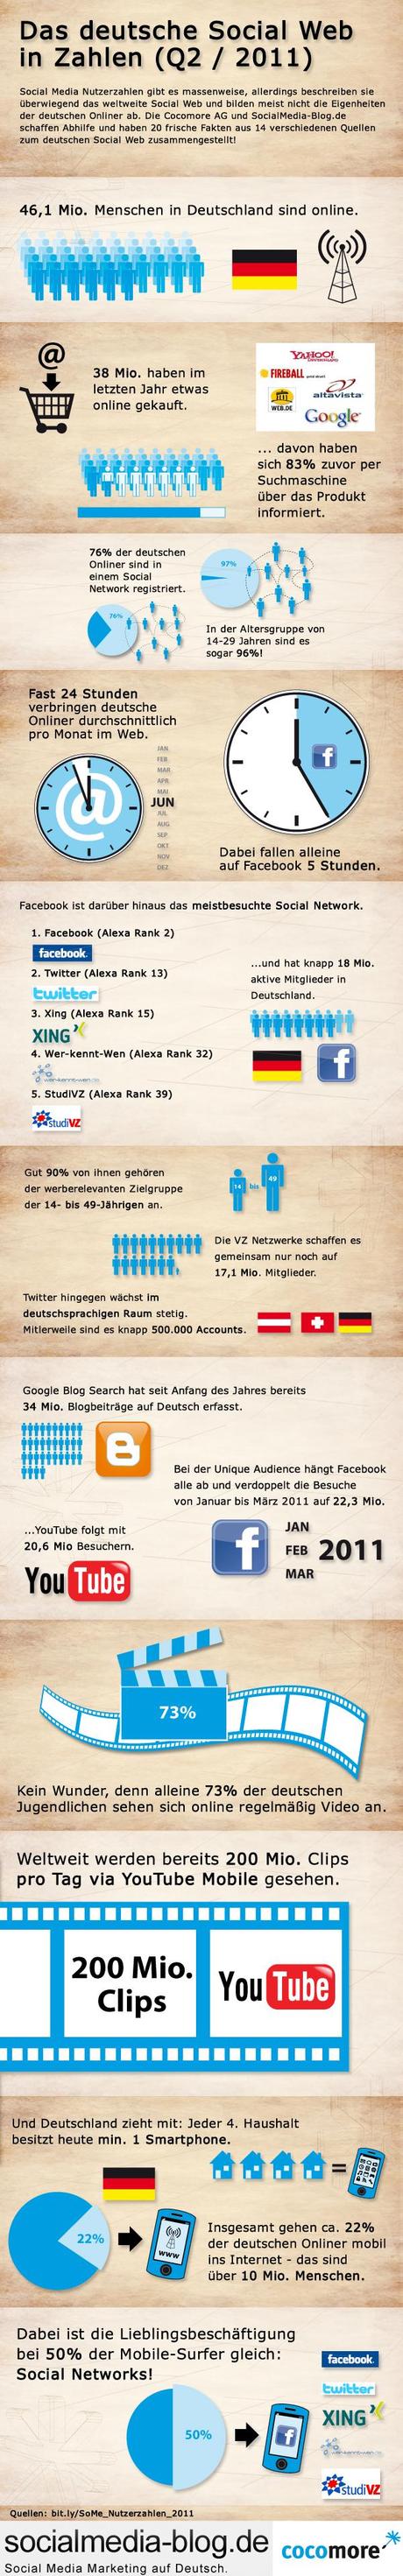 Social Media in Deutschland Nutzerzahlen 2011